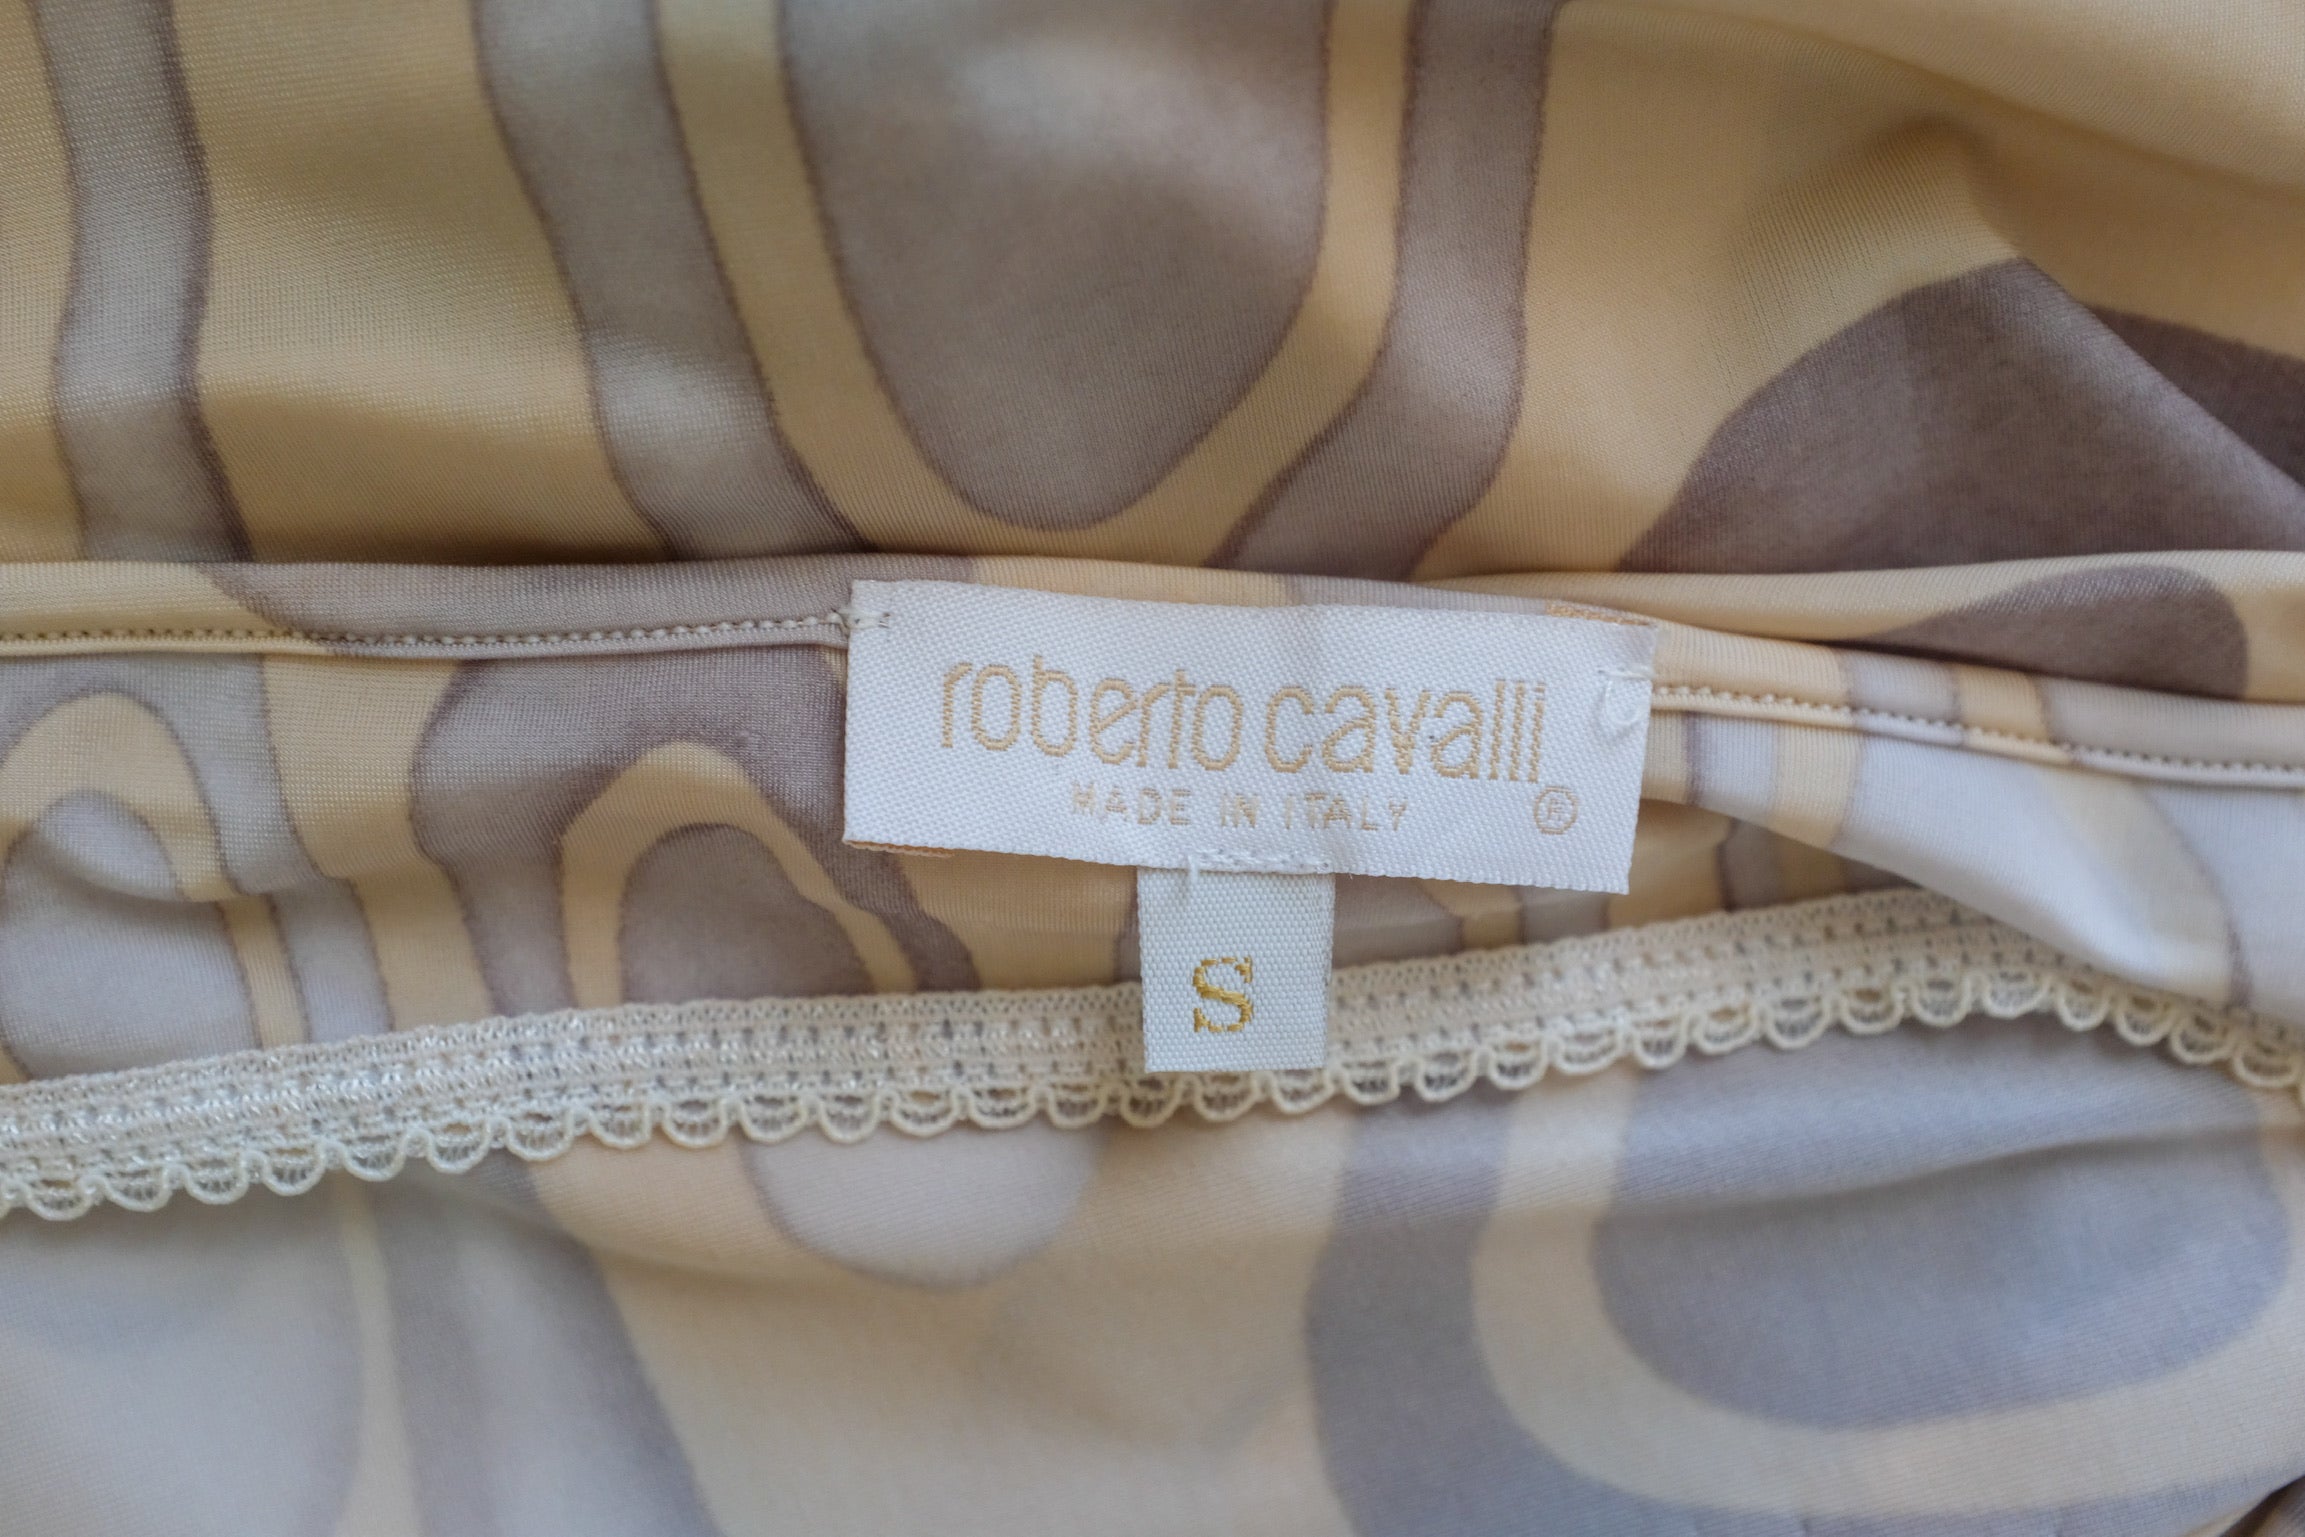 Roberto Cavalli SS 2001 Maxi Dress